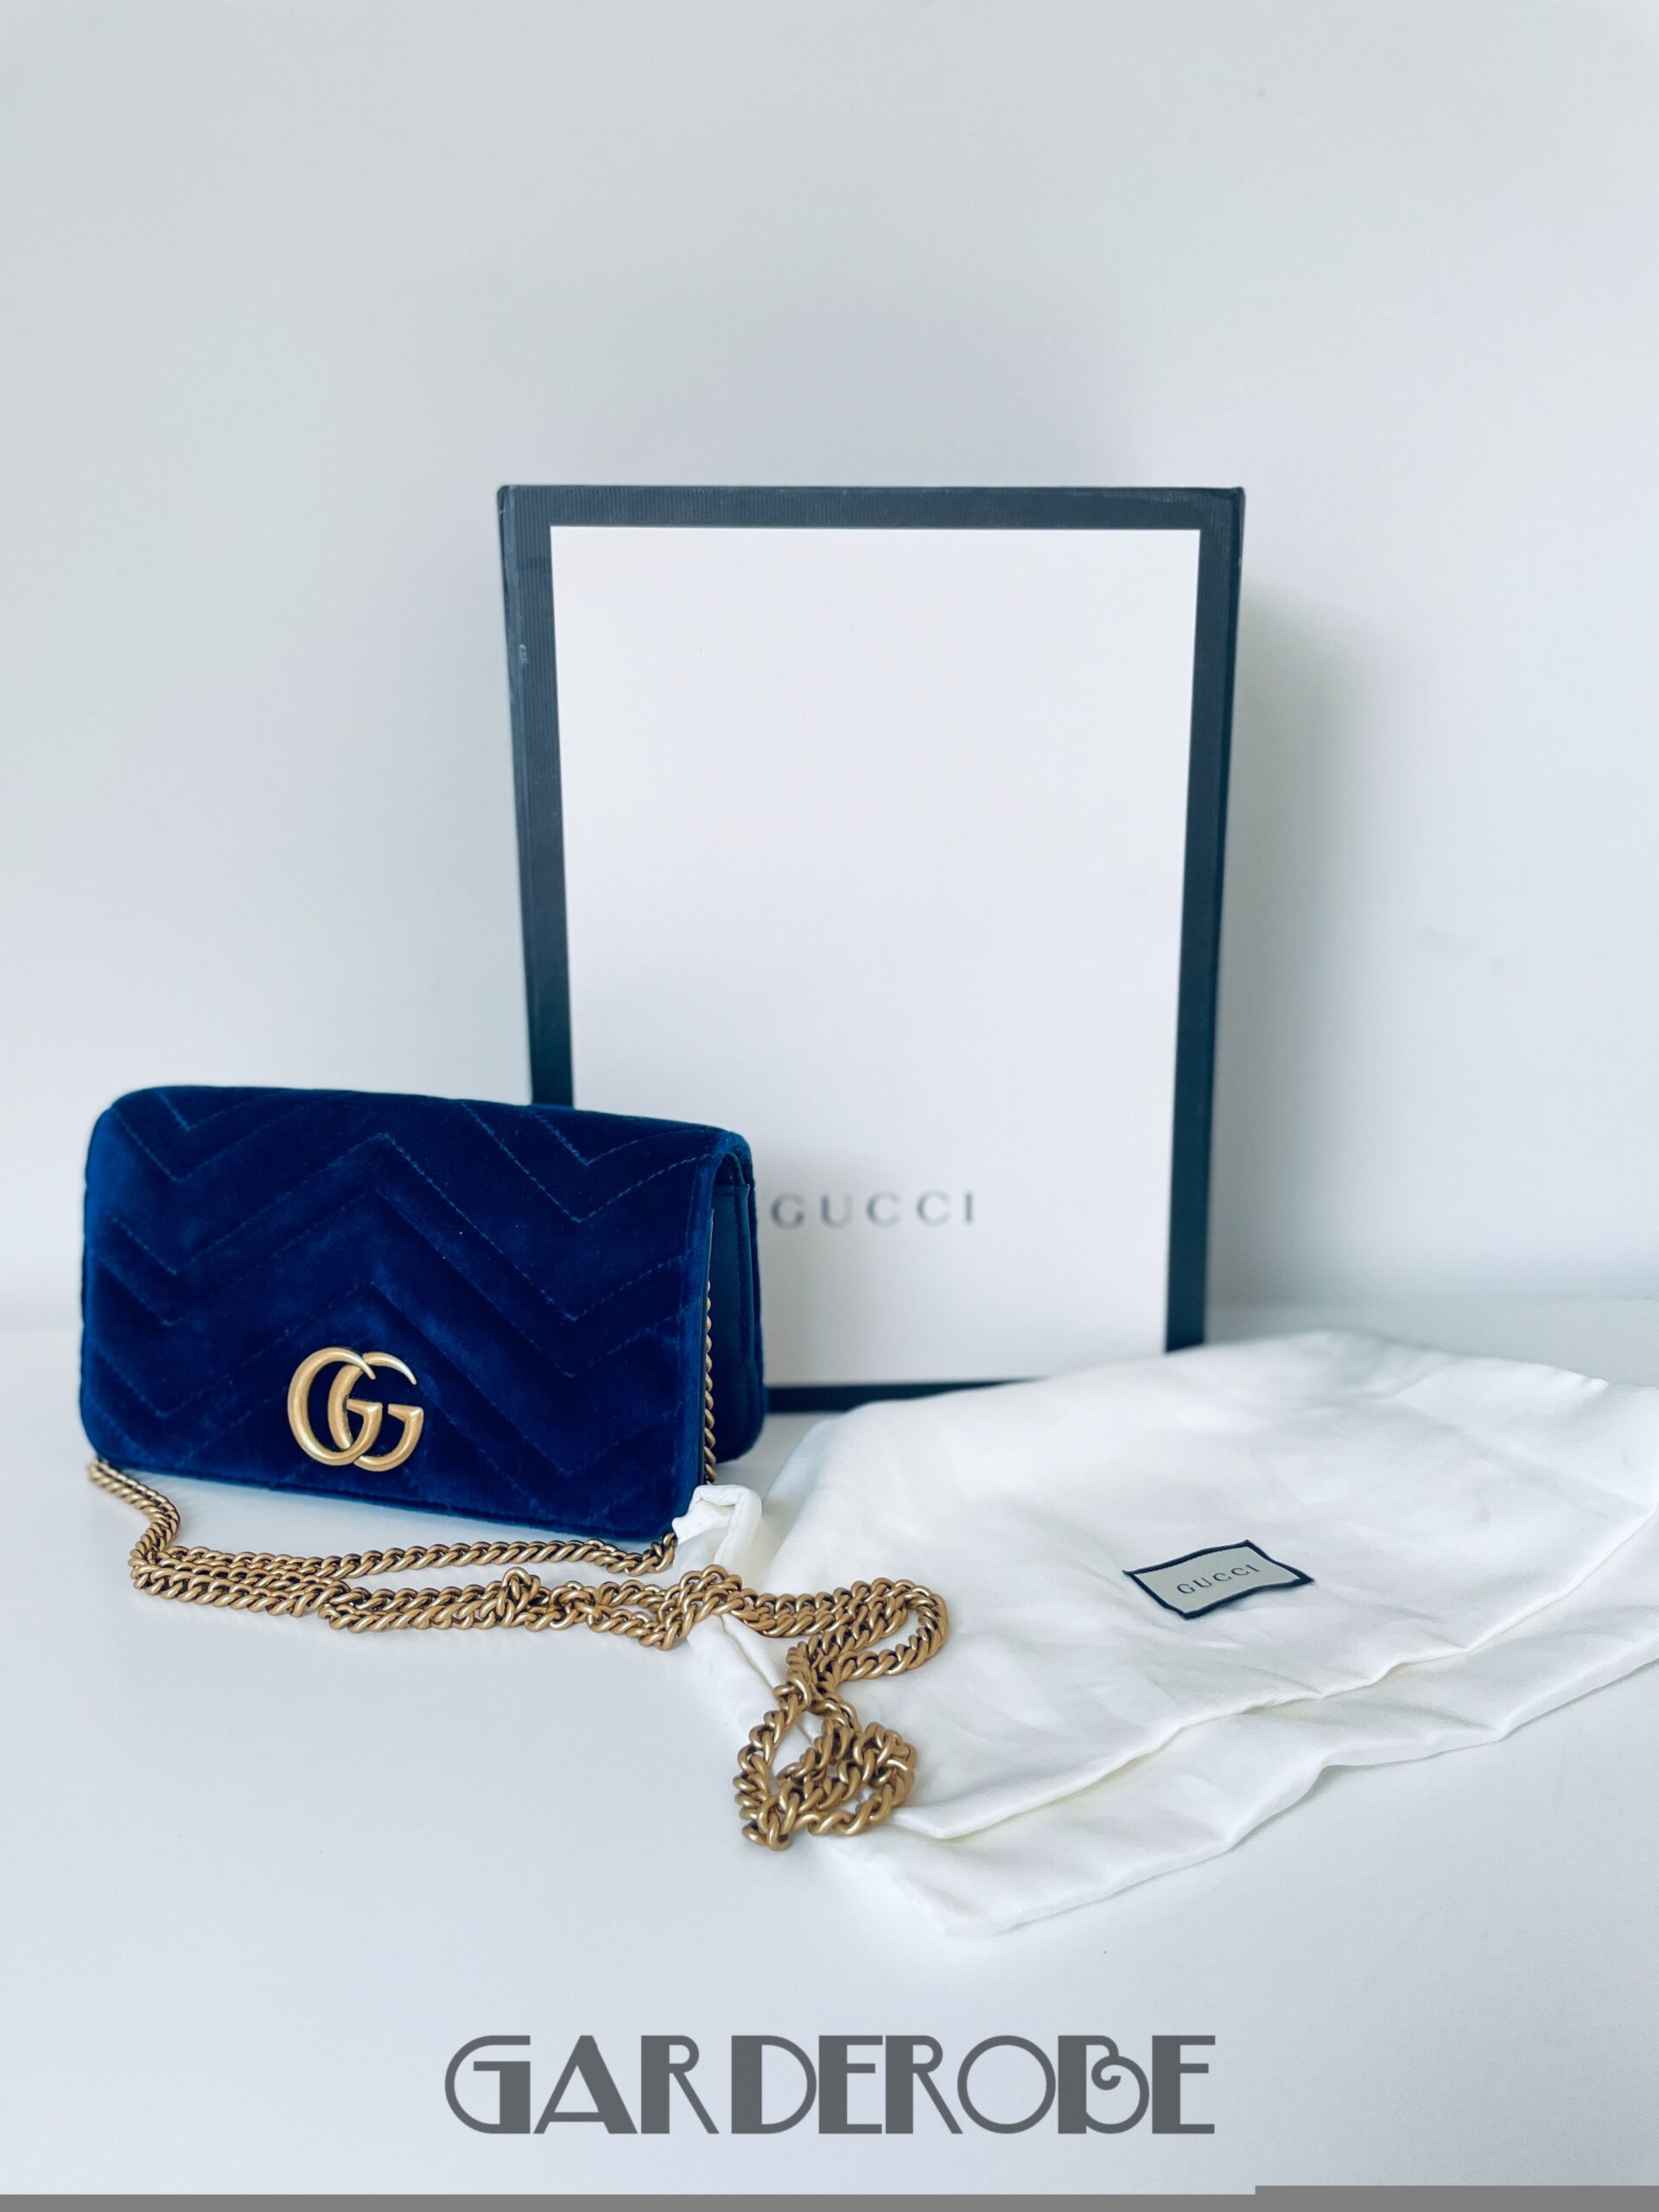 Gucci GG Marmont tasje in blauw fluweel en leder